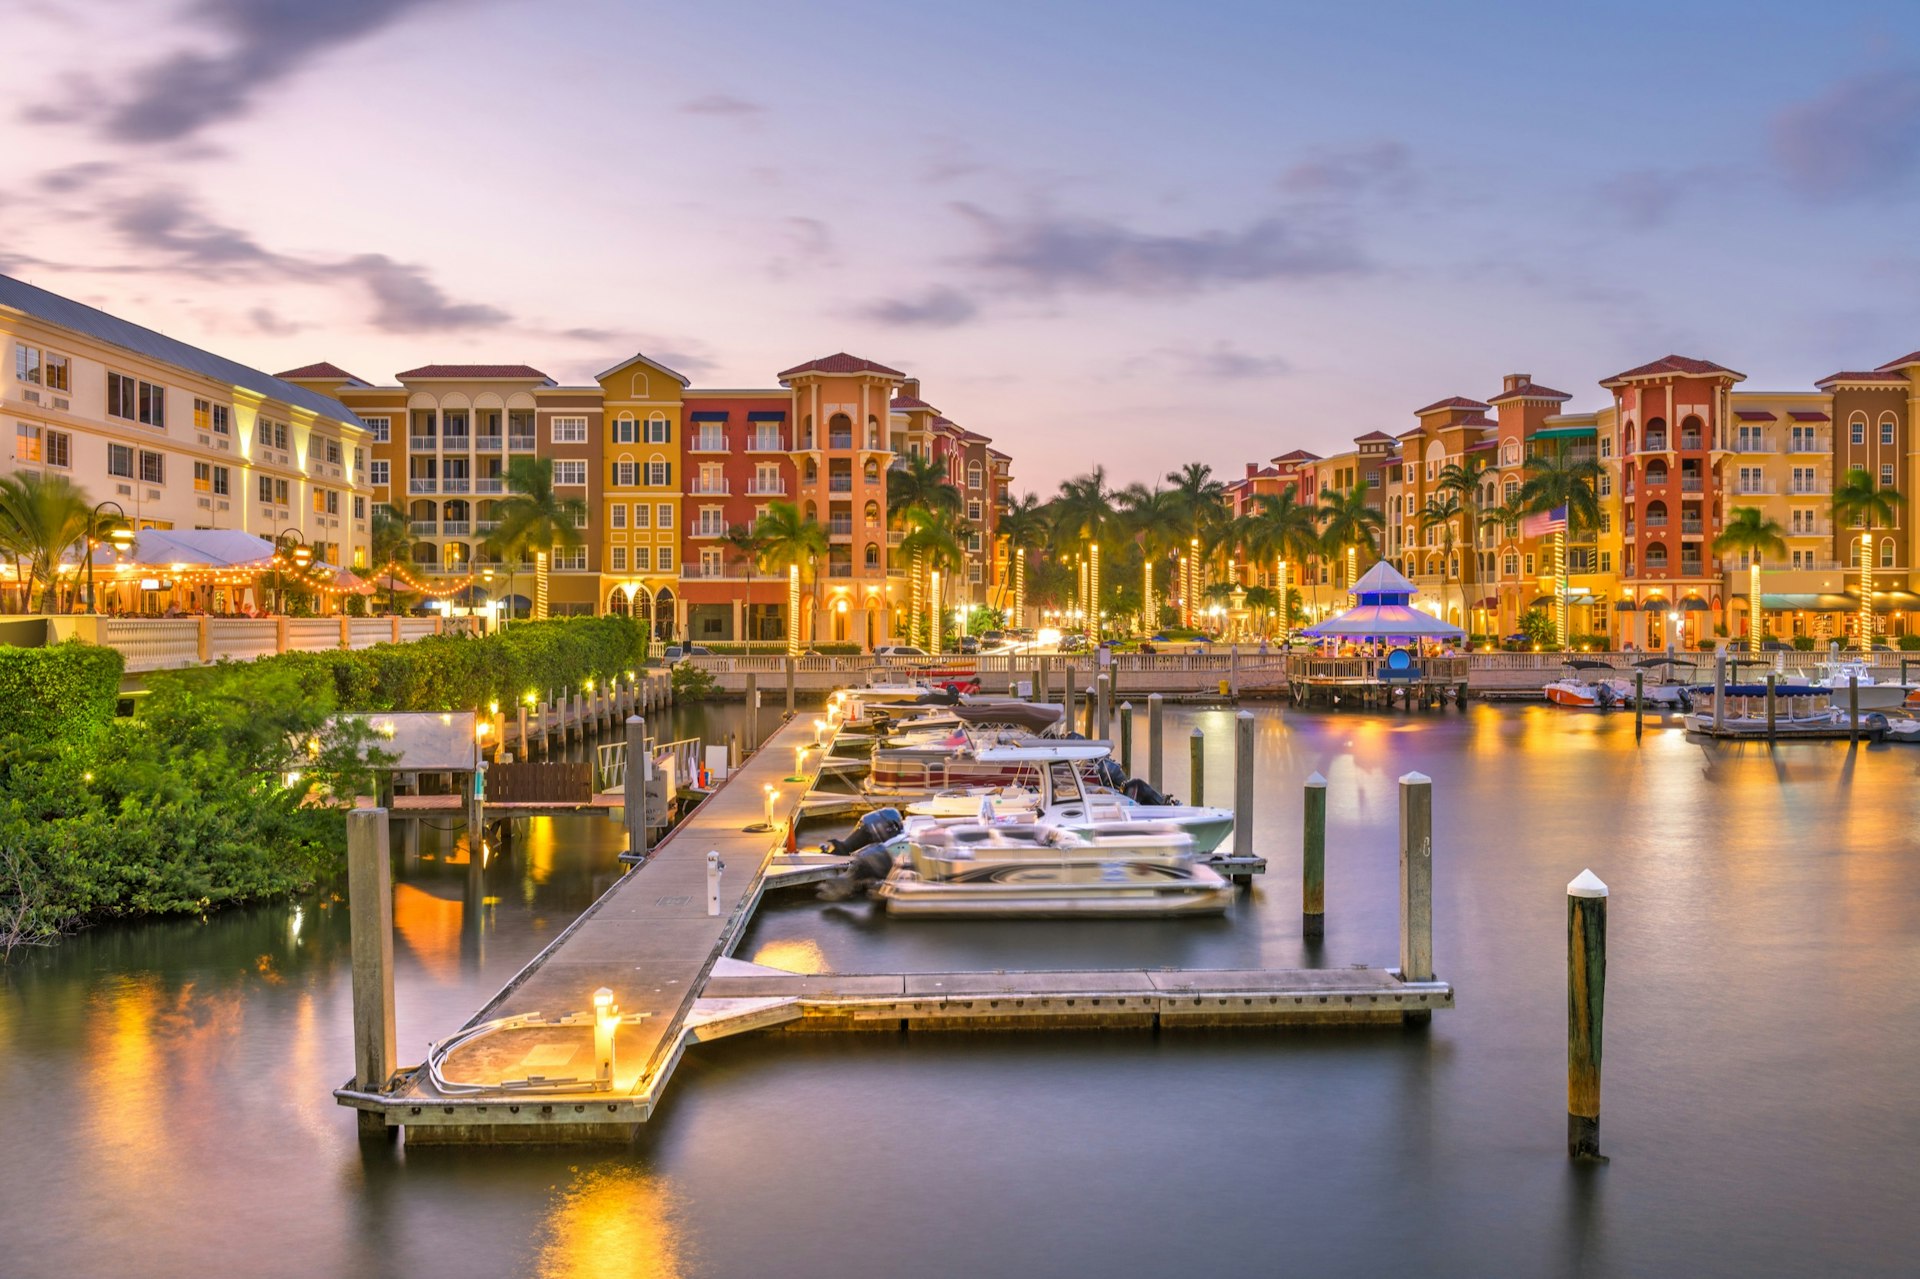 Downtown Naples Florida har bryggor för segelbåtar och en pittoresk historisk stadskärna